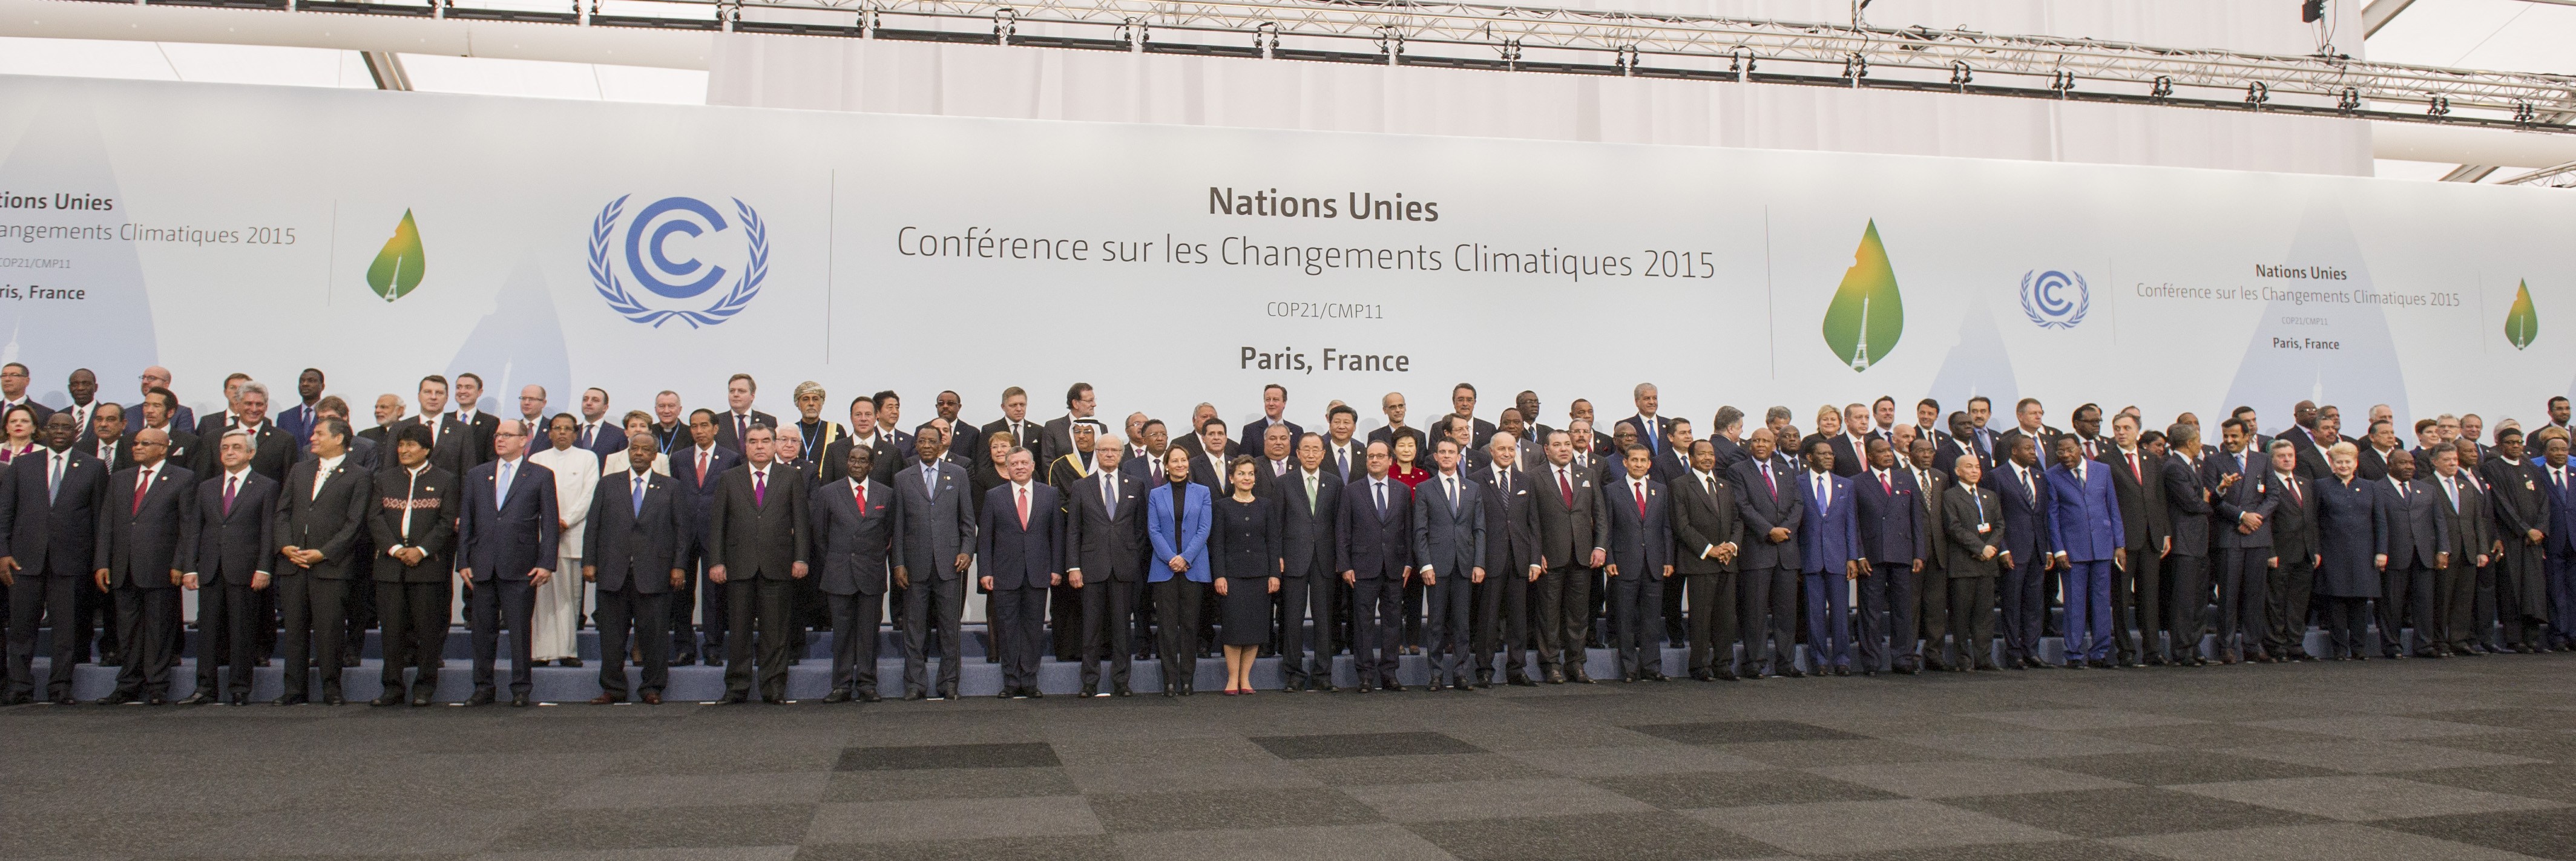 Secretary-General Ban Ki-moon at the Family Photo of Leaders at COP21